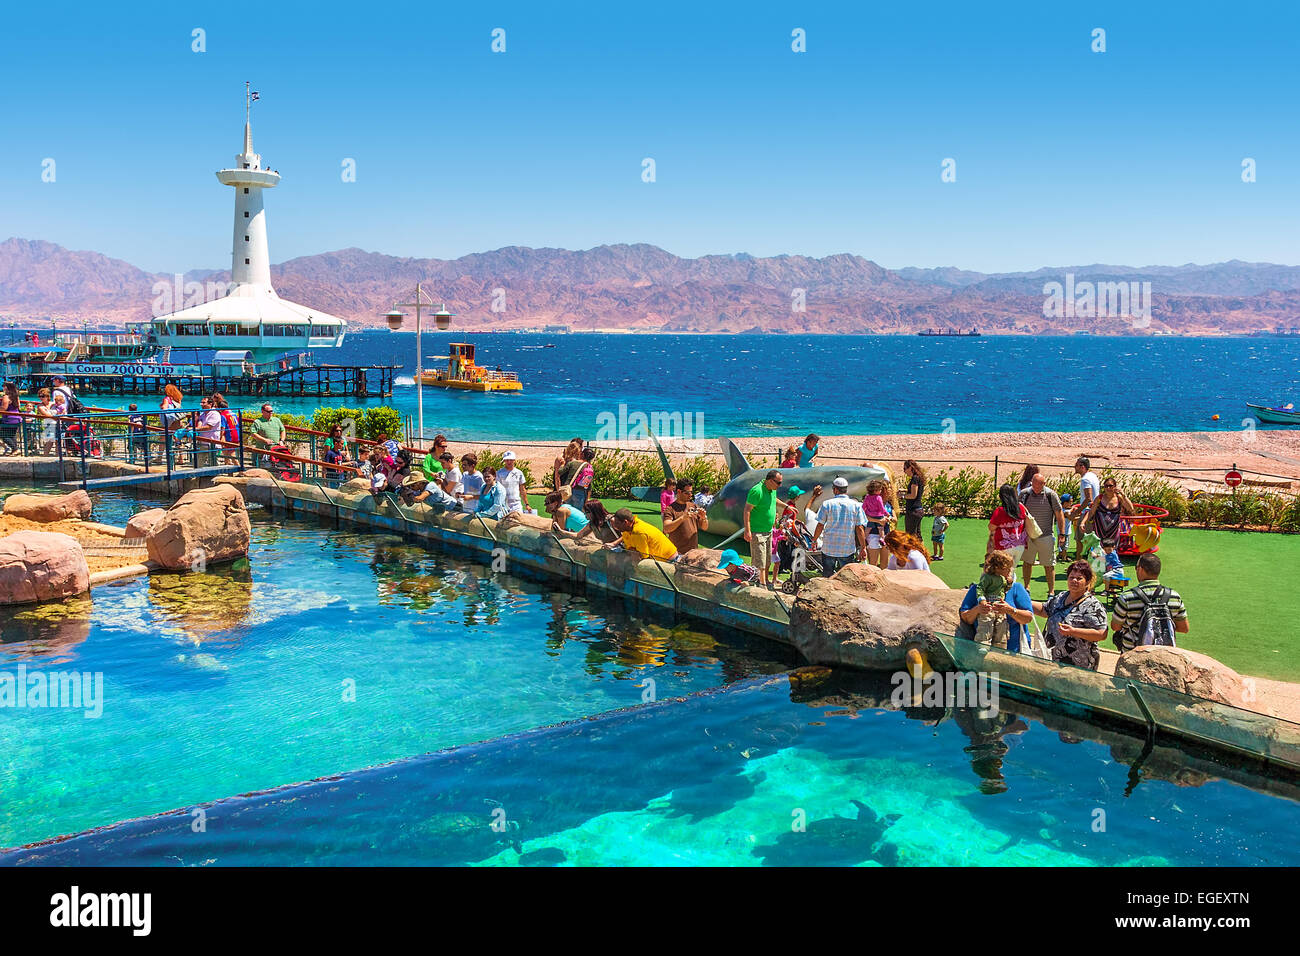 Besucher im Marinepark - Unterwasser-Observatorium am Roten Meer in Eilat, Israel. Stockfoto